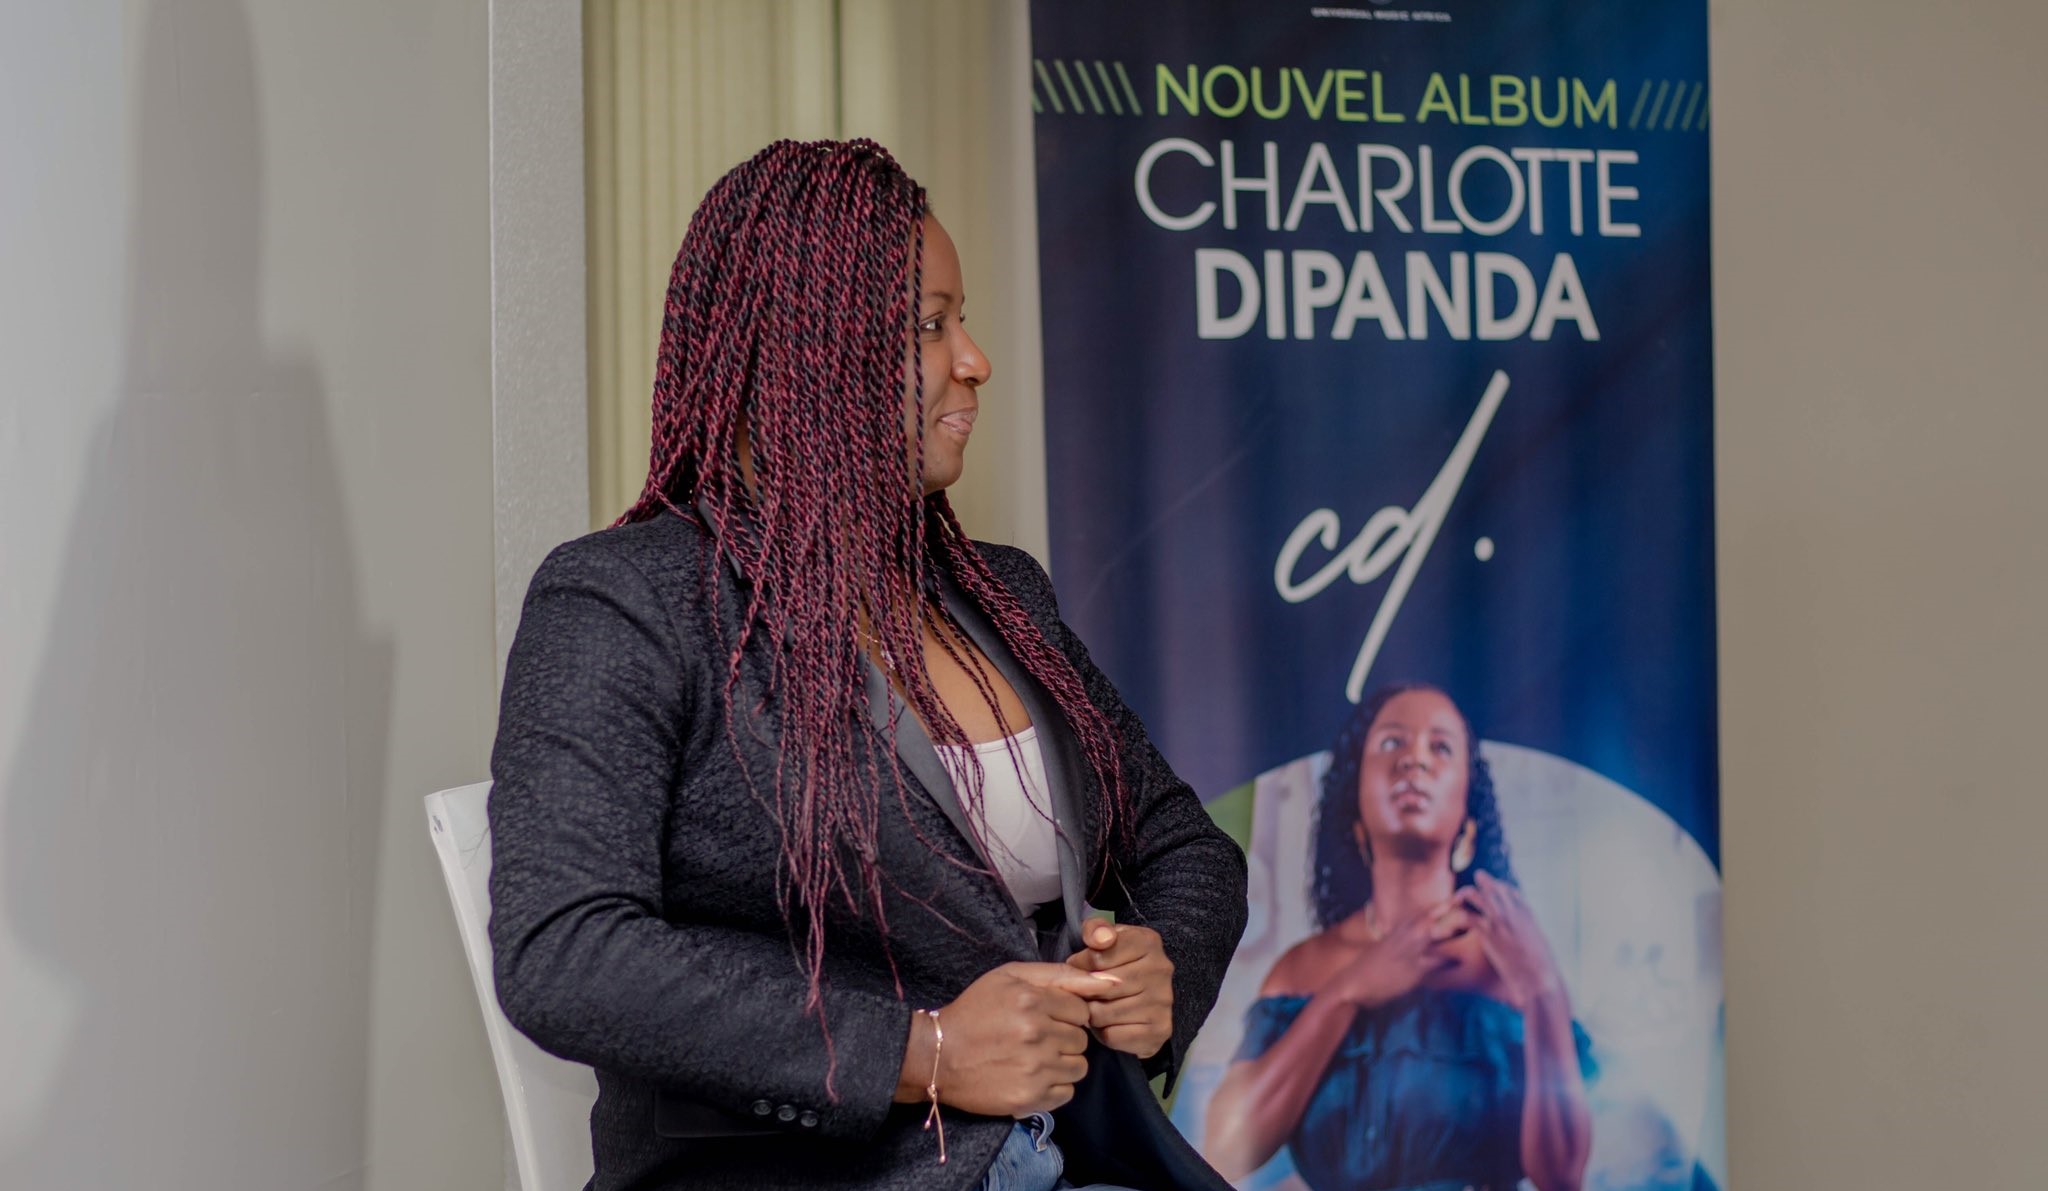 CD, titre de son cinquième album est une autobiographie en chanson de l’artiste. Voilà pourquoi il a été baptisé tout simplement CD, Charlotte Dipanda.